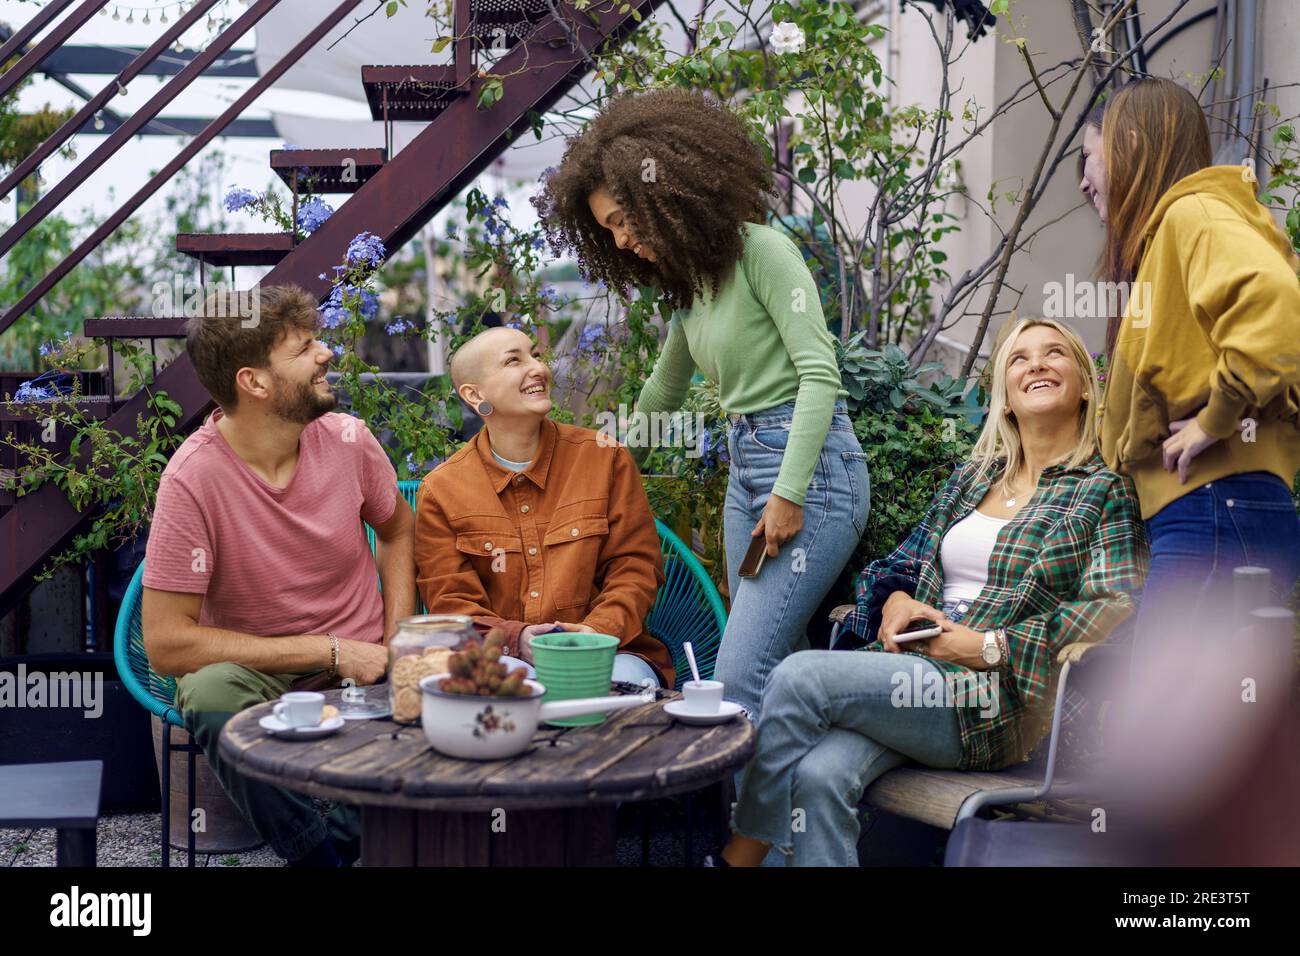 Junge multikulturelle Studenten genießen Espresso und Kekse, interagieren mit einem Lächeln auf einer mit Pflanzen gefüllten Terrasse, mit einigen auf ihren Telefonen. Stockfoto